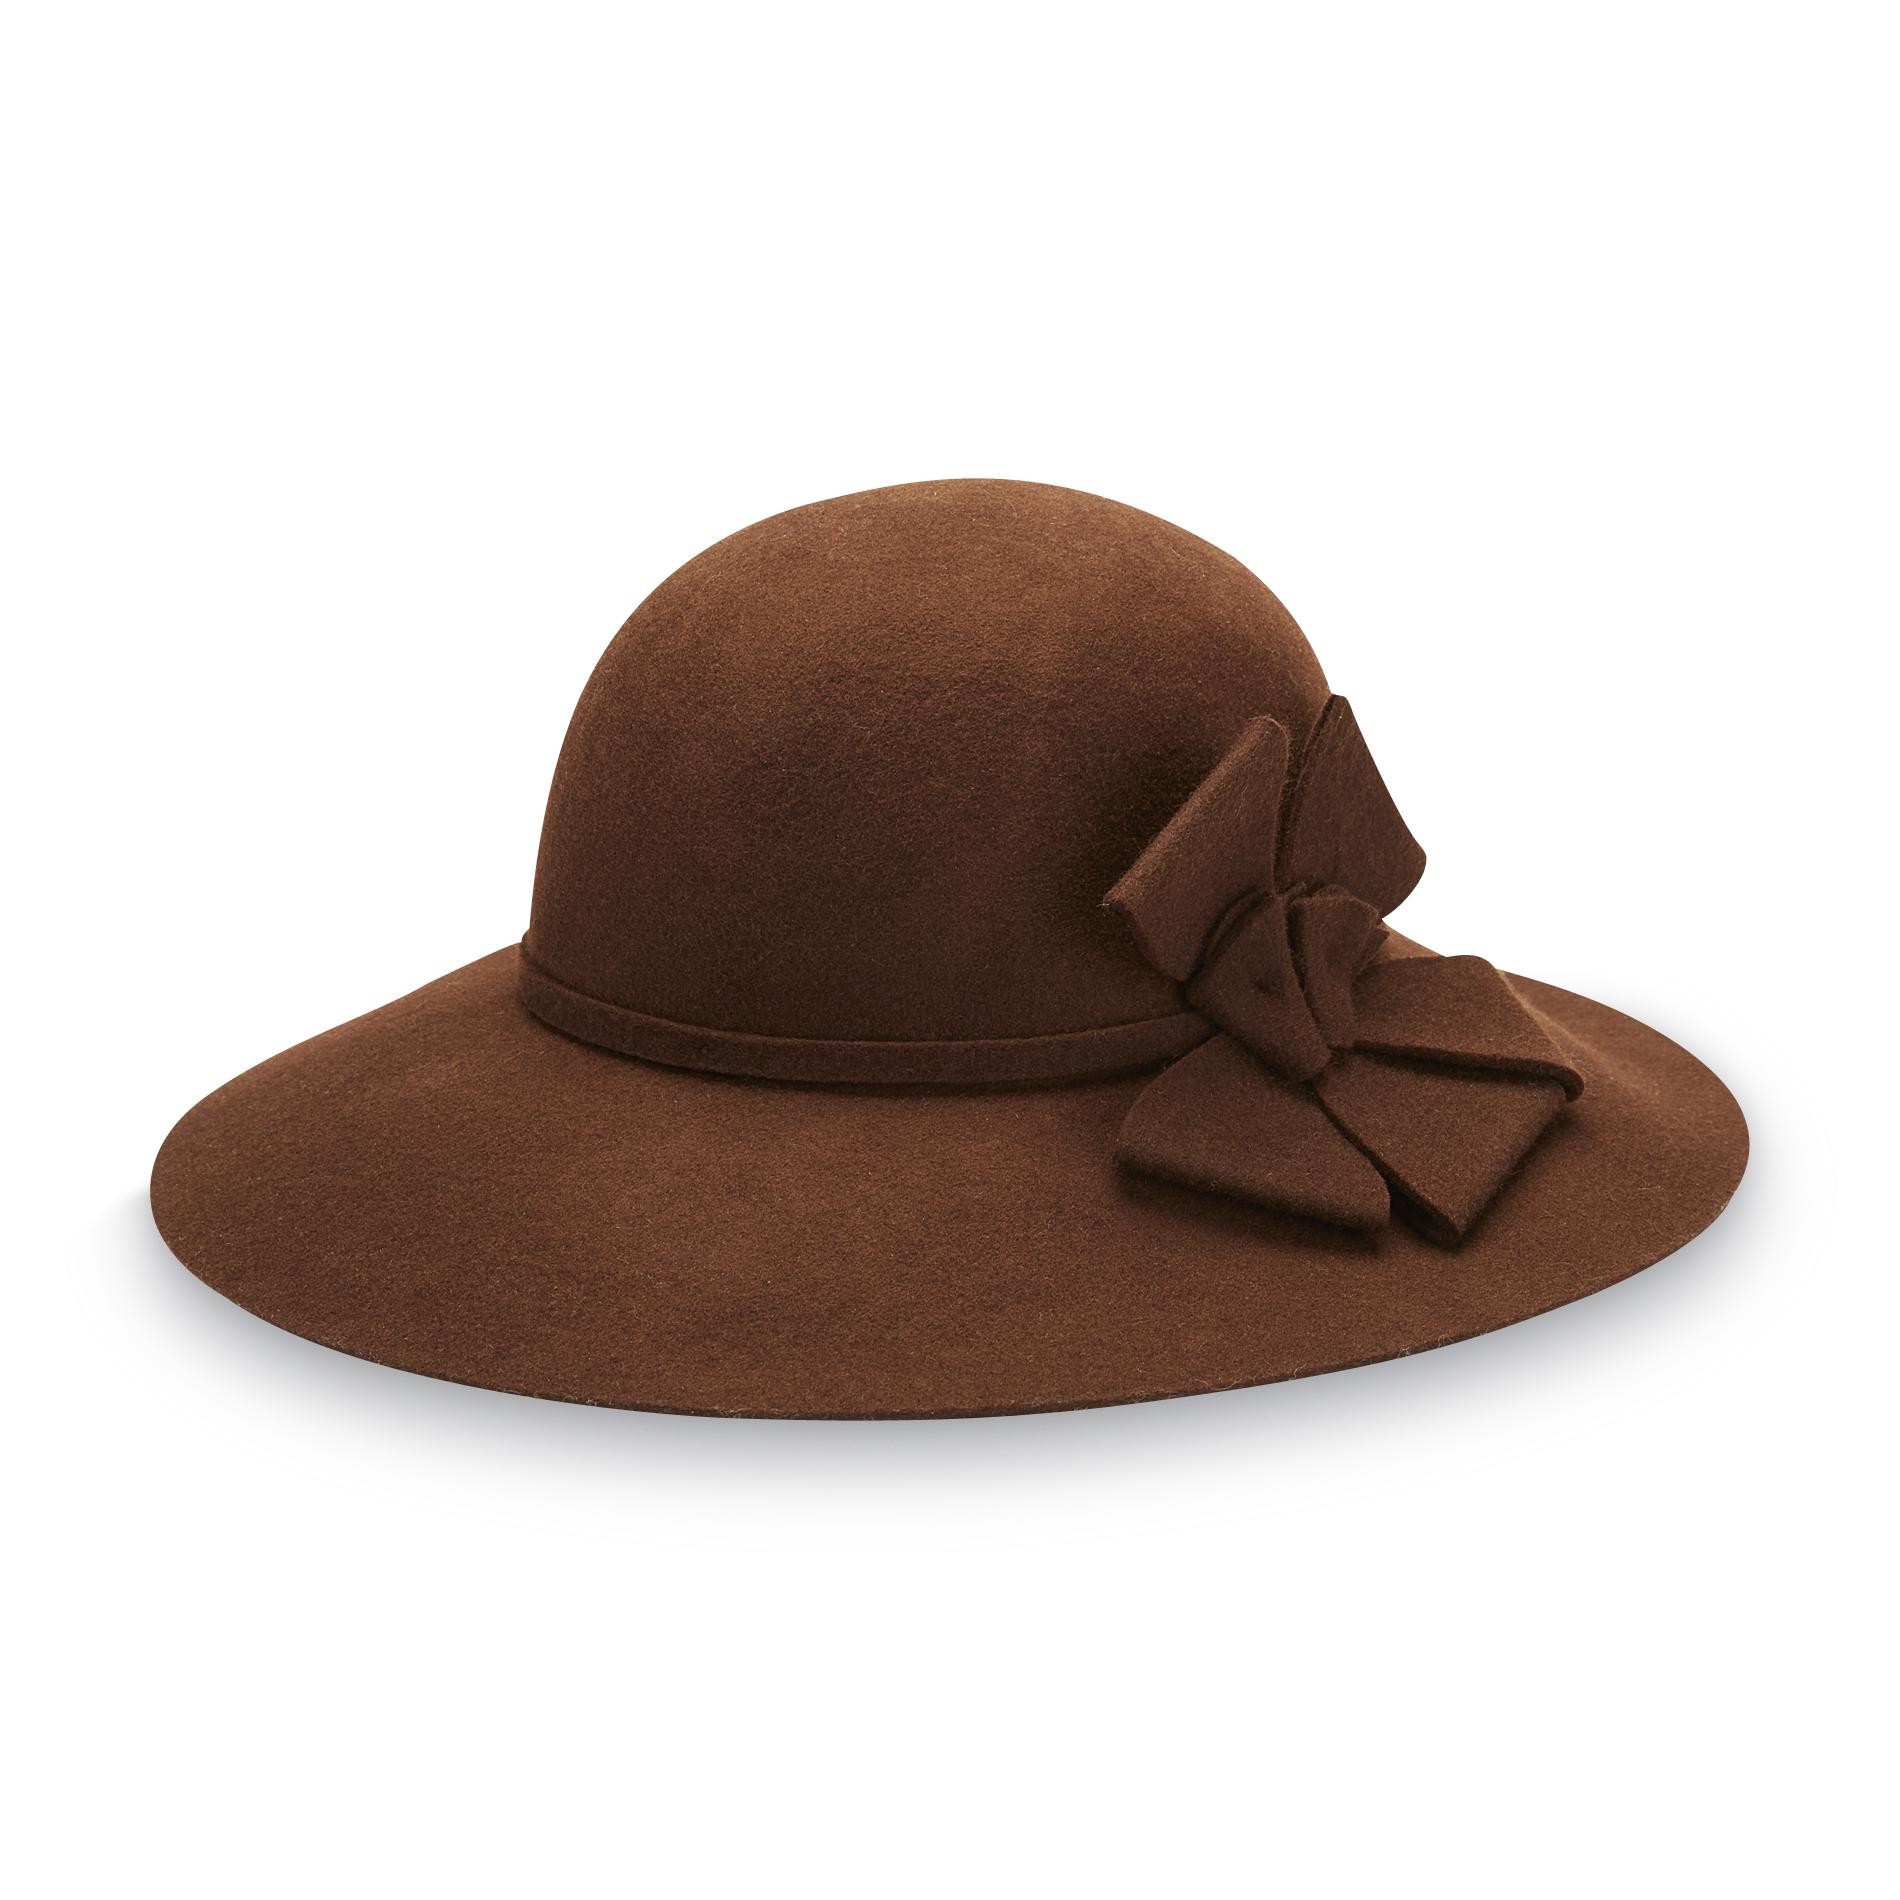 Studio S Women's Felt Hat